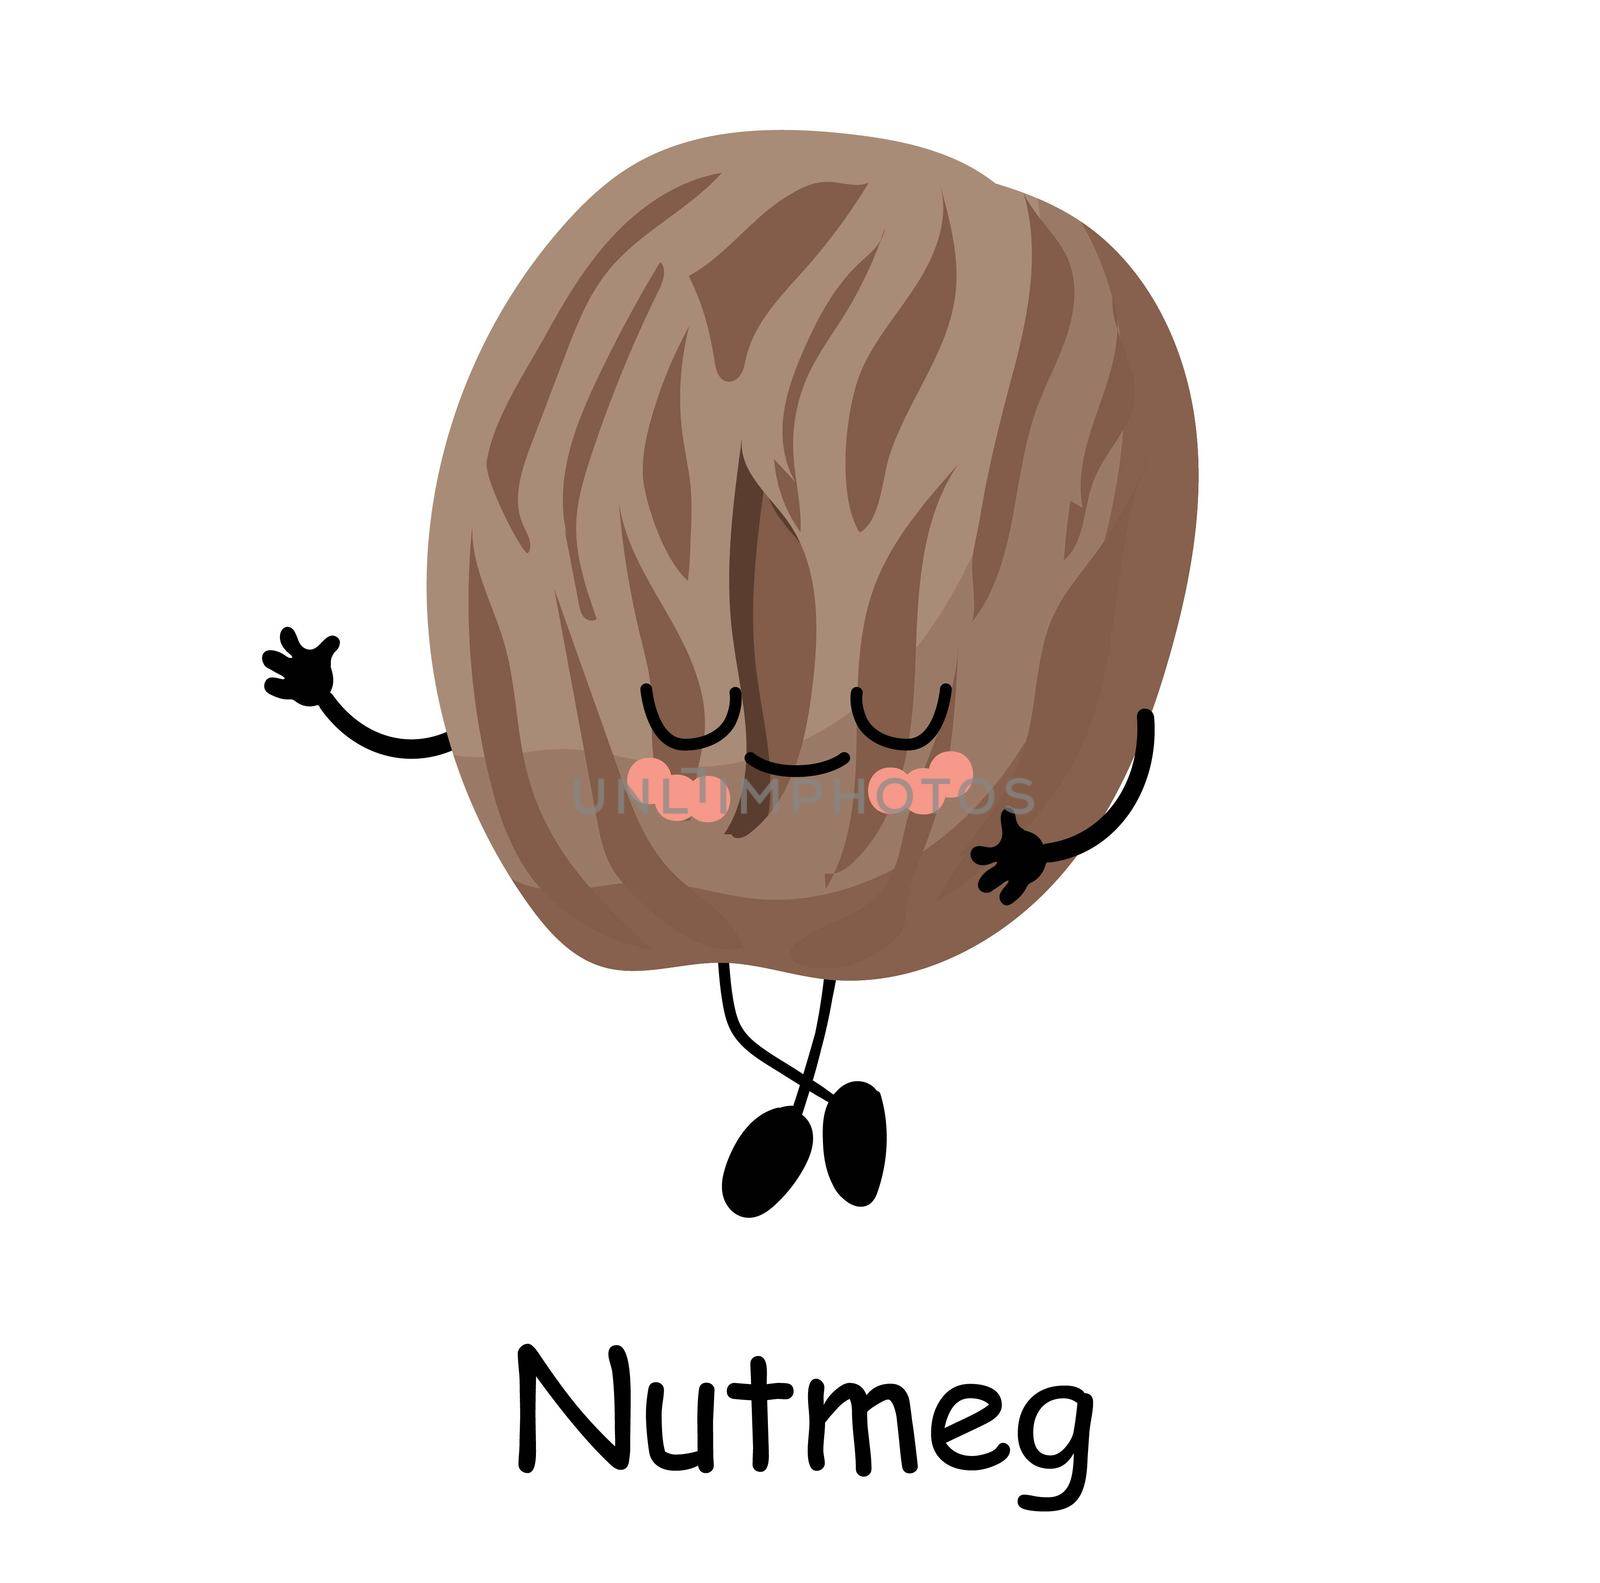 nutmeg character. Useful vegan food. Nuts are good